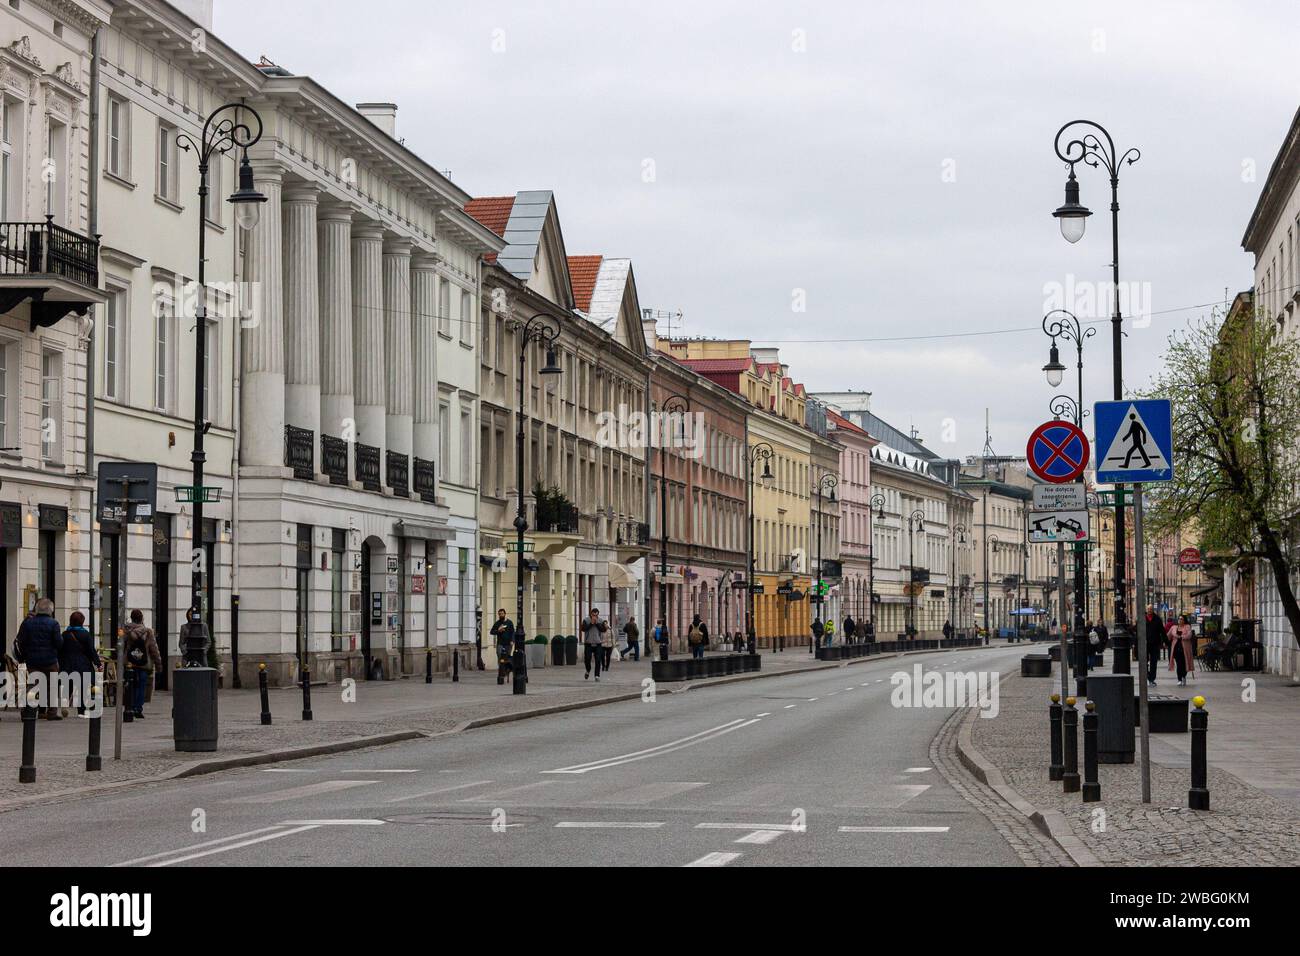 Varsovie, Pologne. Nowy Swiat (New World Street), l'une des principales artères historiques du centre de Varsovie Banque D'Images